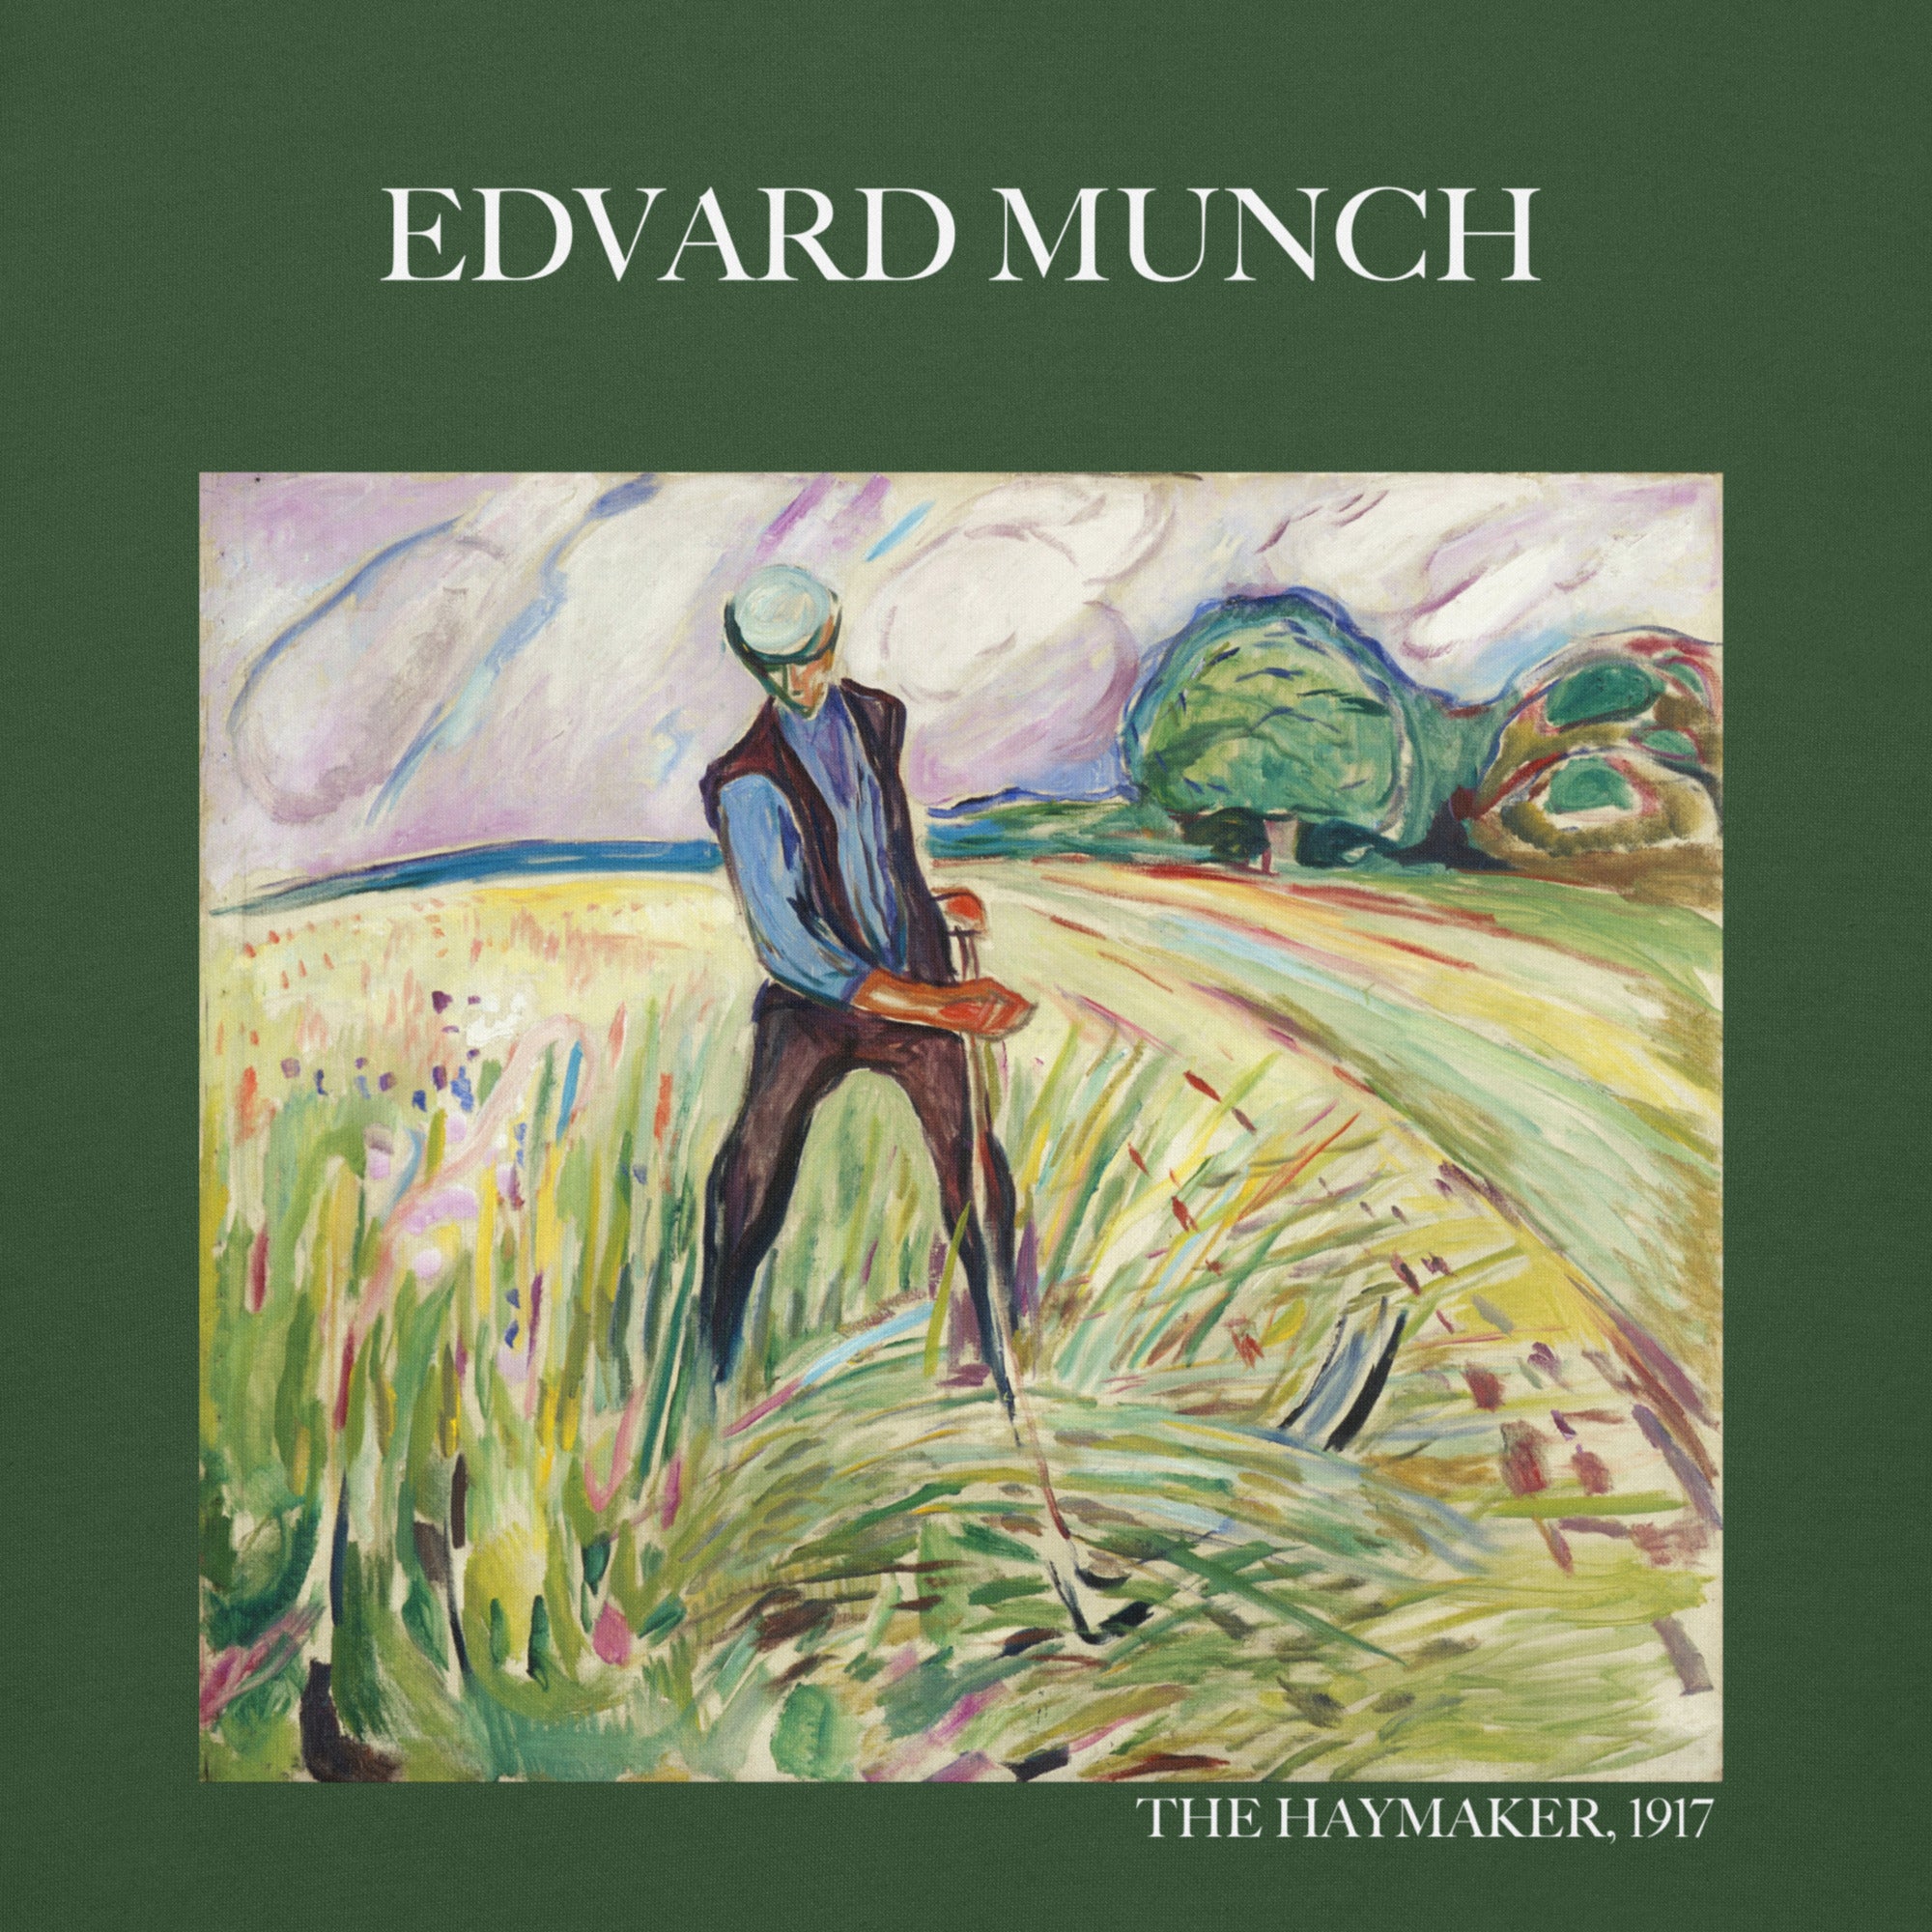 Edvard Munch 'The Haymaker' Famous Painting Hoodie | Unisex Premium Art Hoodie